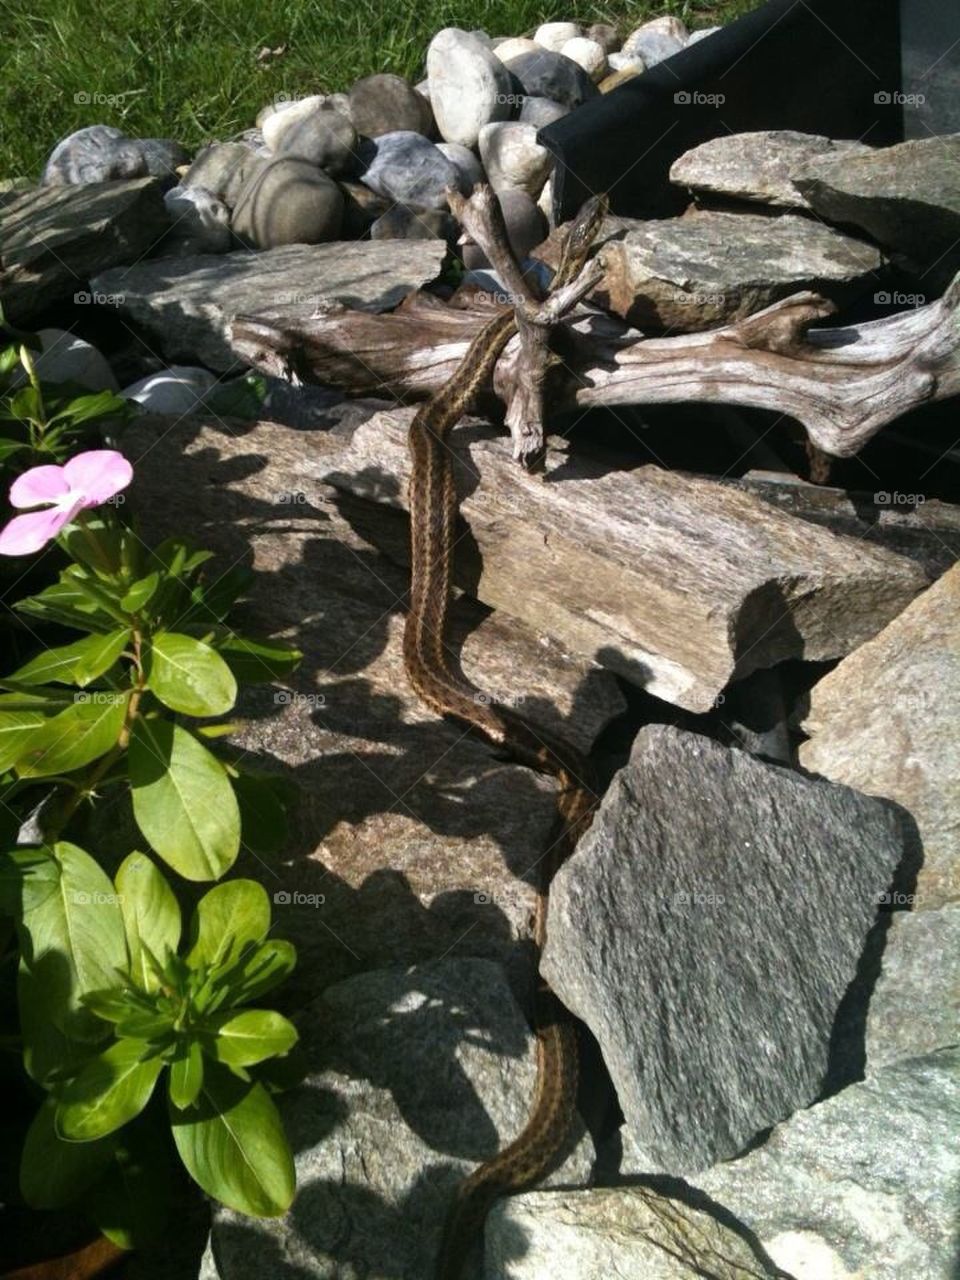 Gardener snake